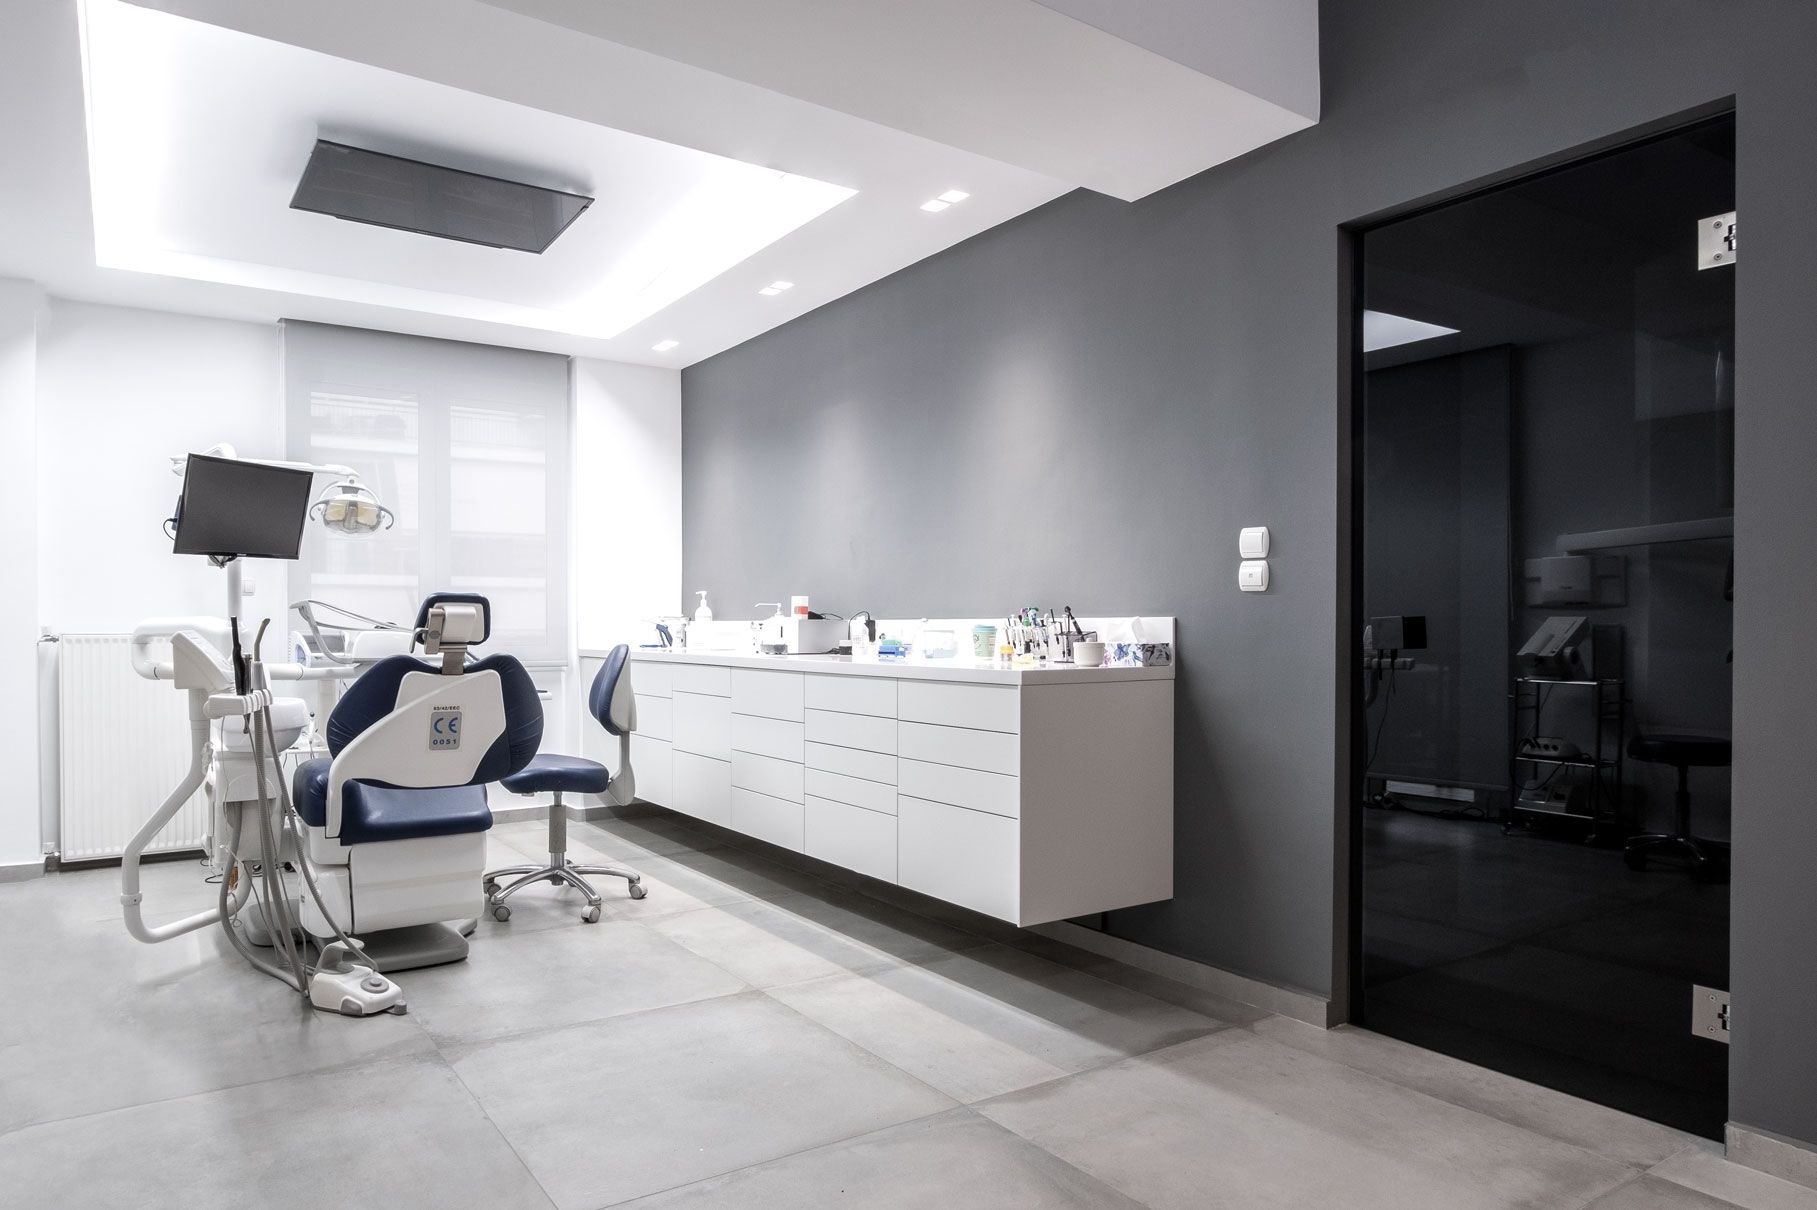 Dental cliniq renovation office and lobby design in Kifisia, ανακαίνιση οδοντιατρείου χώρου γραφείου και lobby στην Κηφισιά